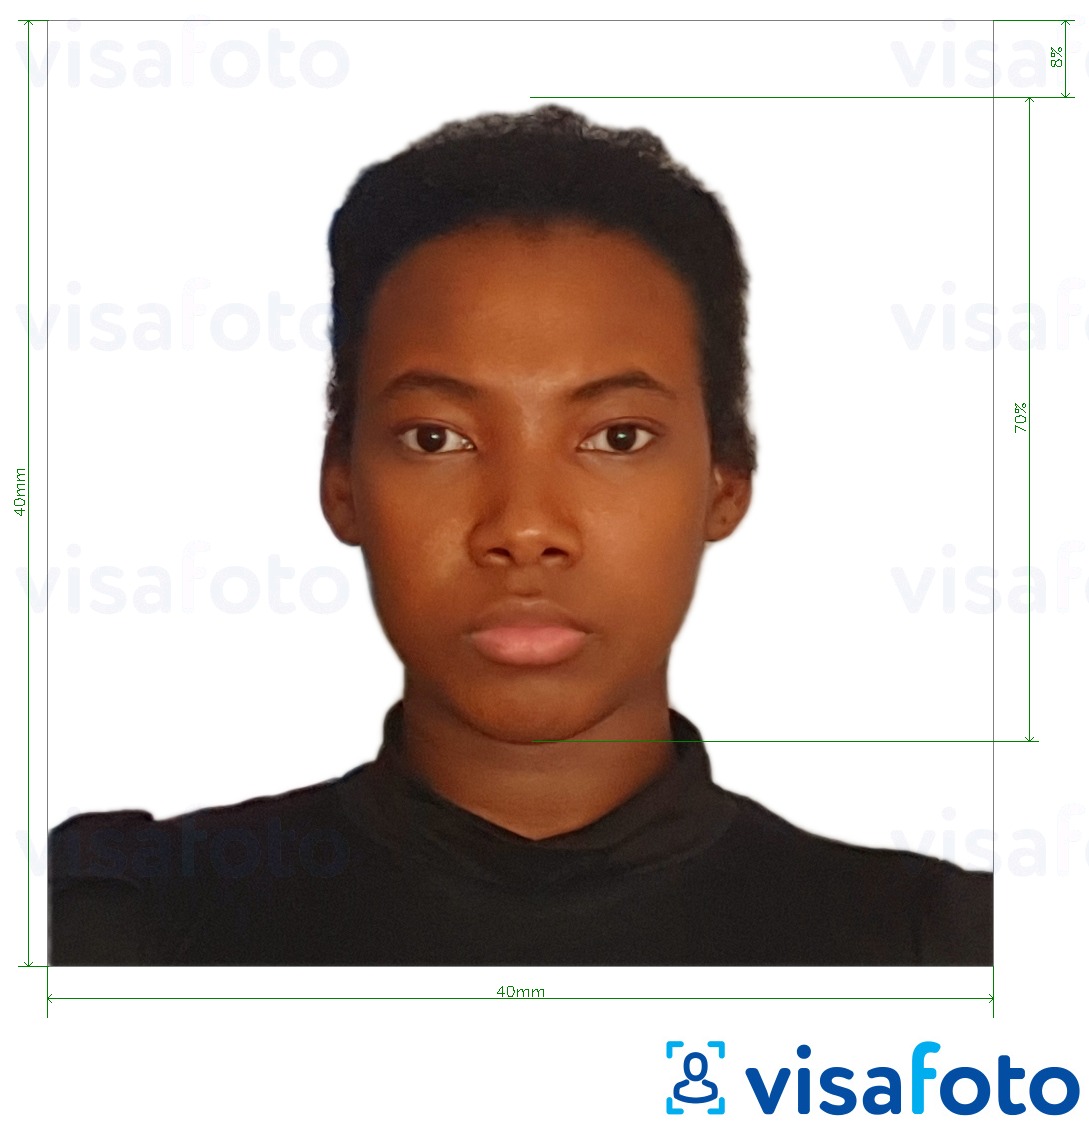 Exemples sur des photos pour Madagascar passeport 40x40 mm avec les spécifications de taille exactes